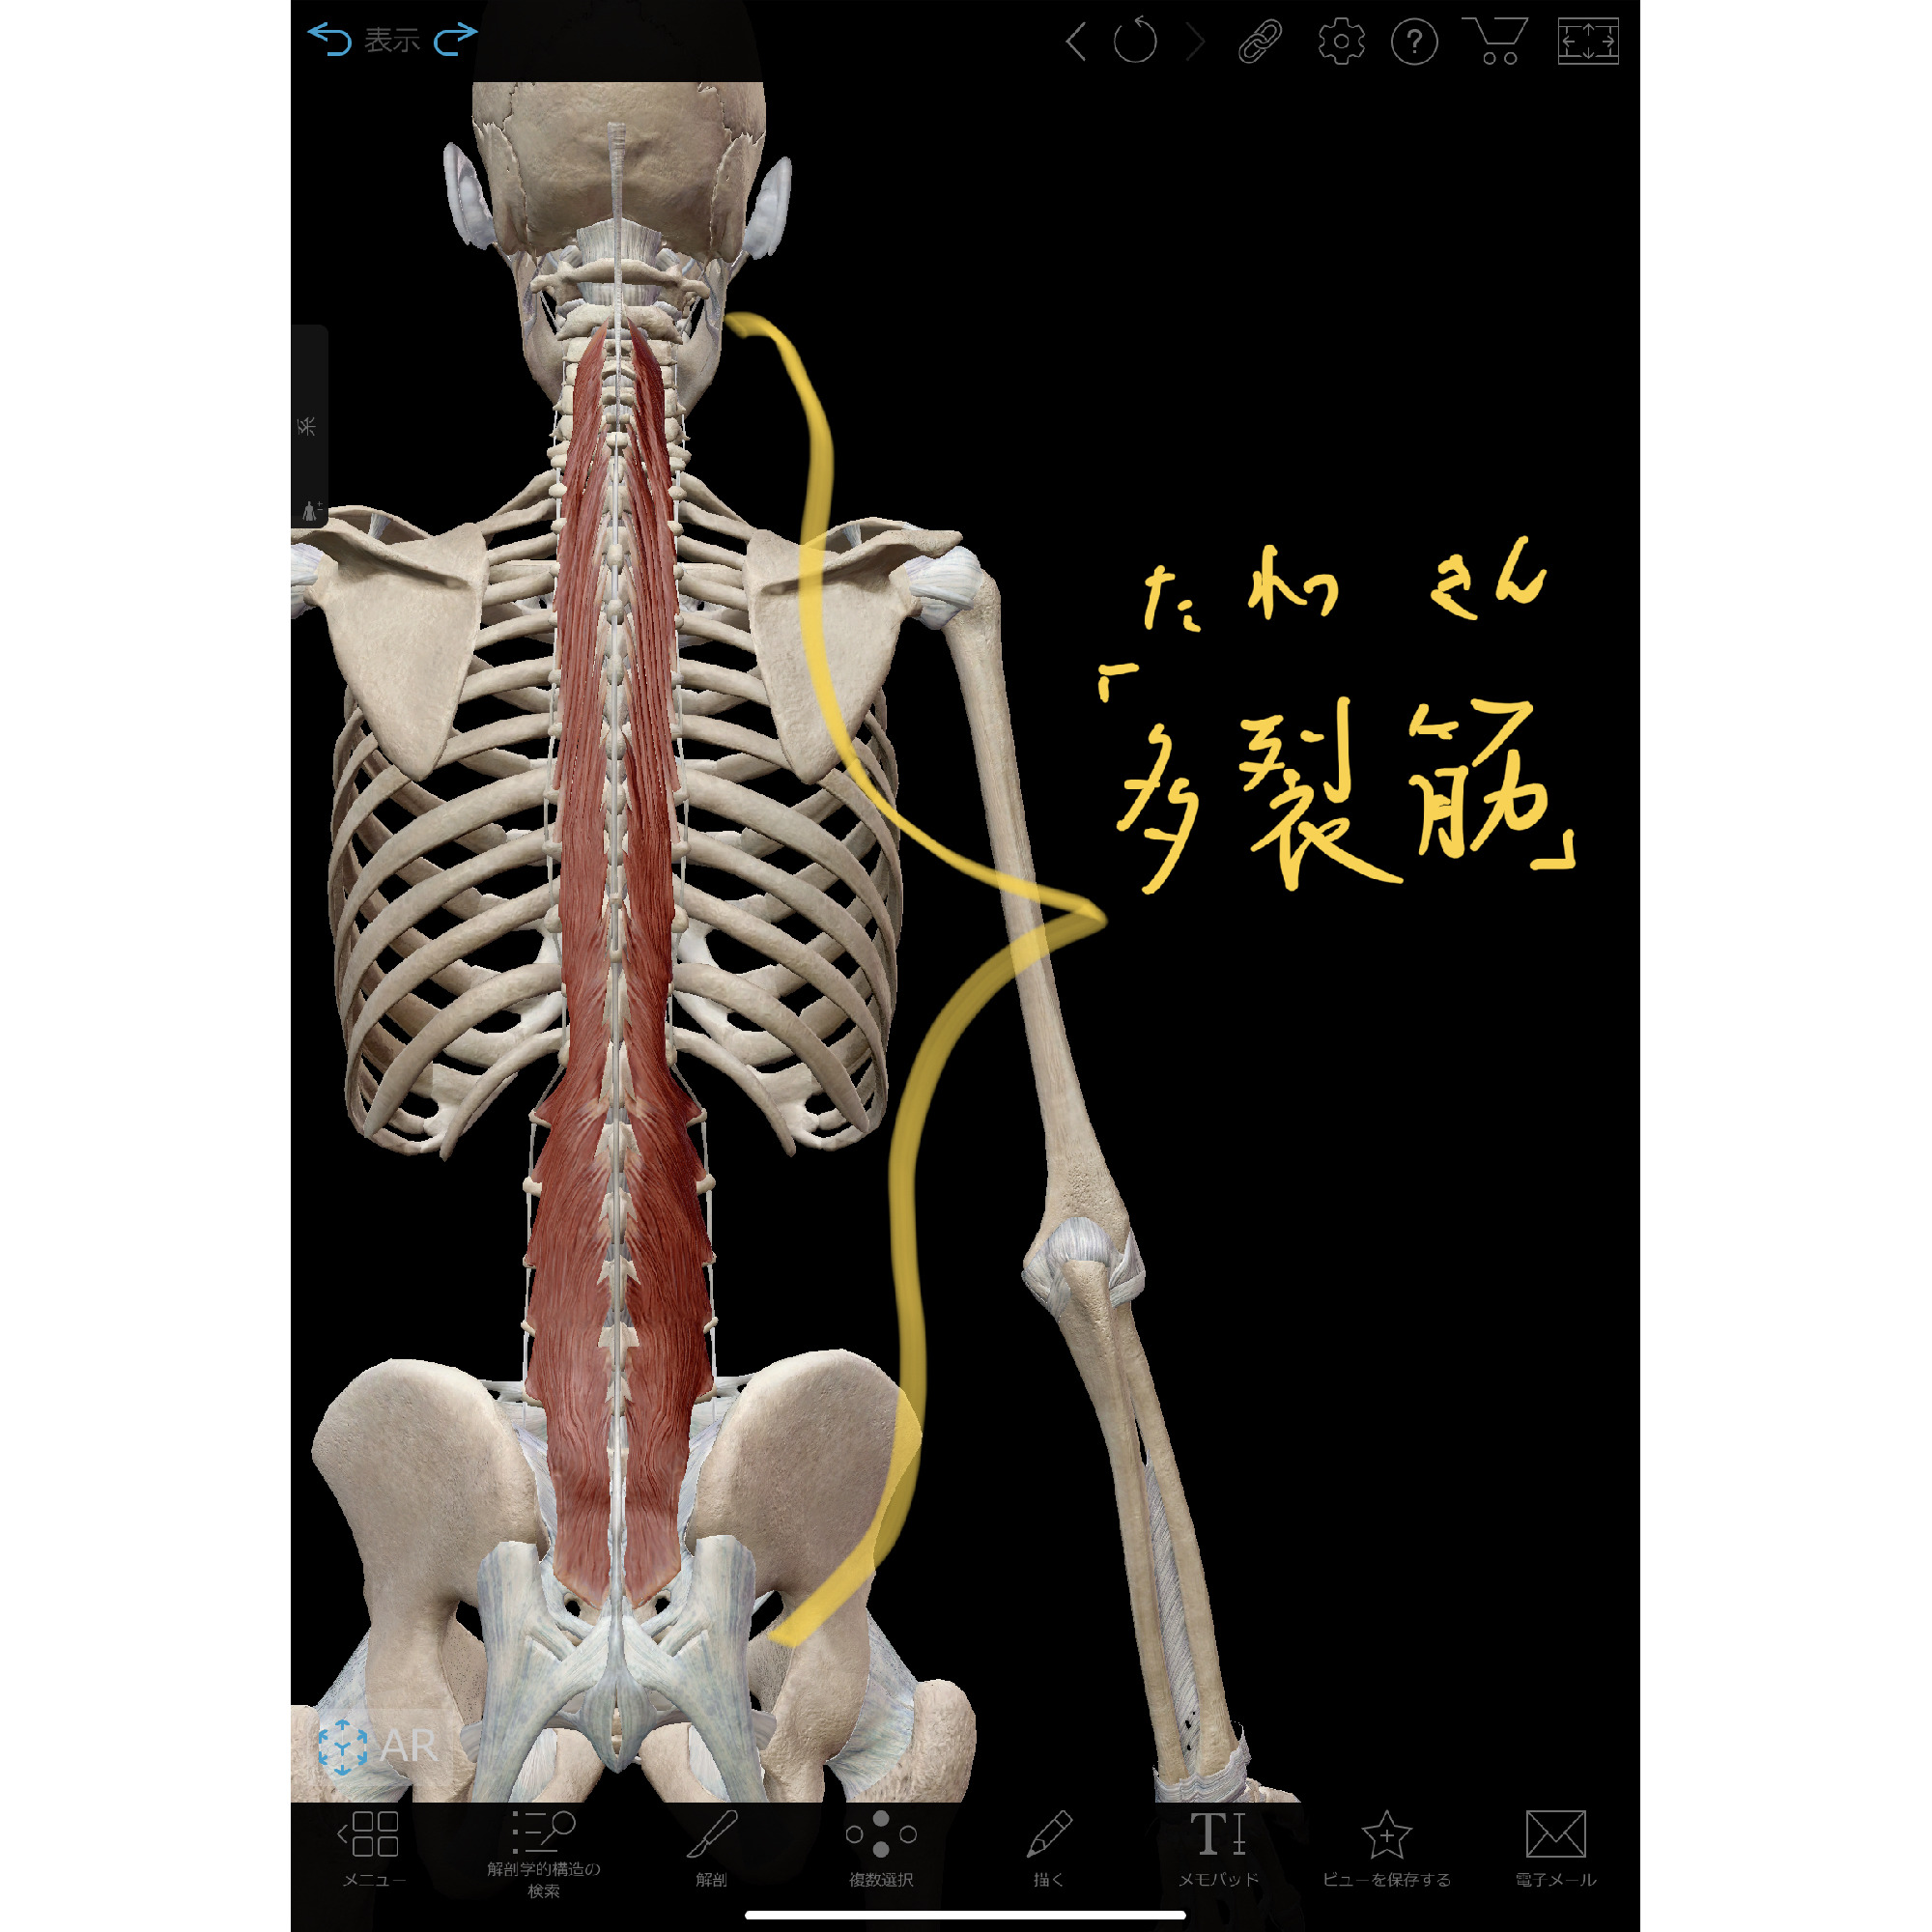 腰痛を改善する「多裂筋体操」 :理学療法士 安部元隆 [マイベストプロ大分]